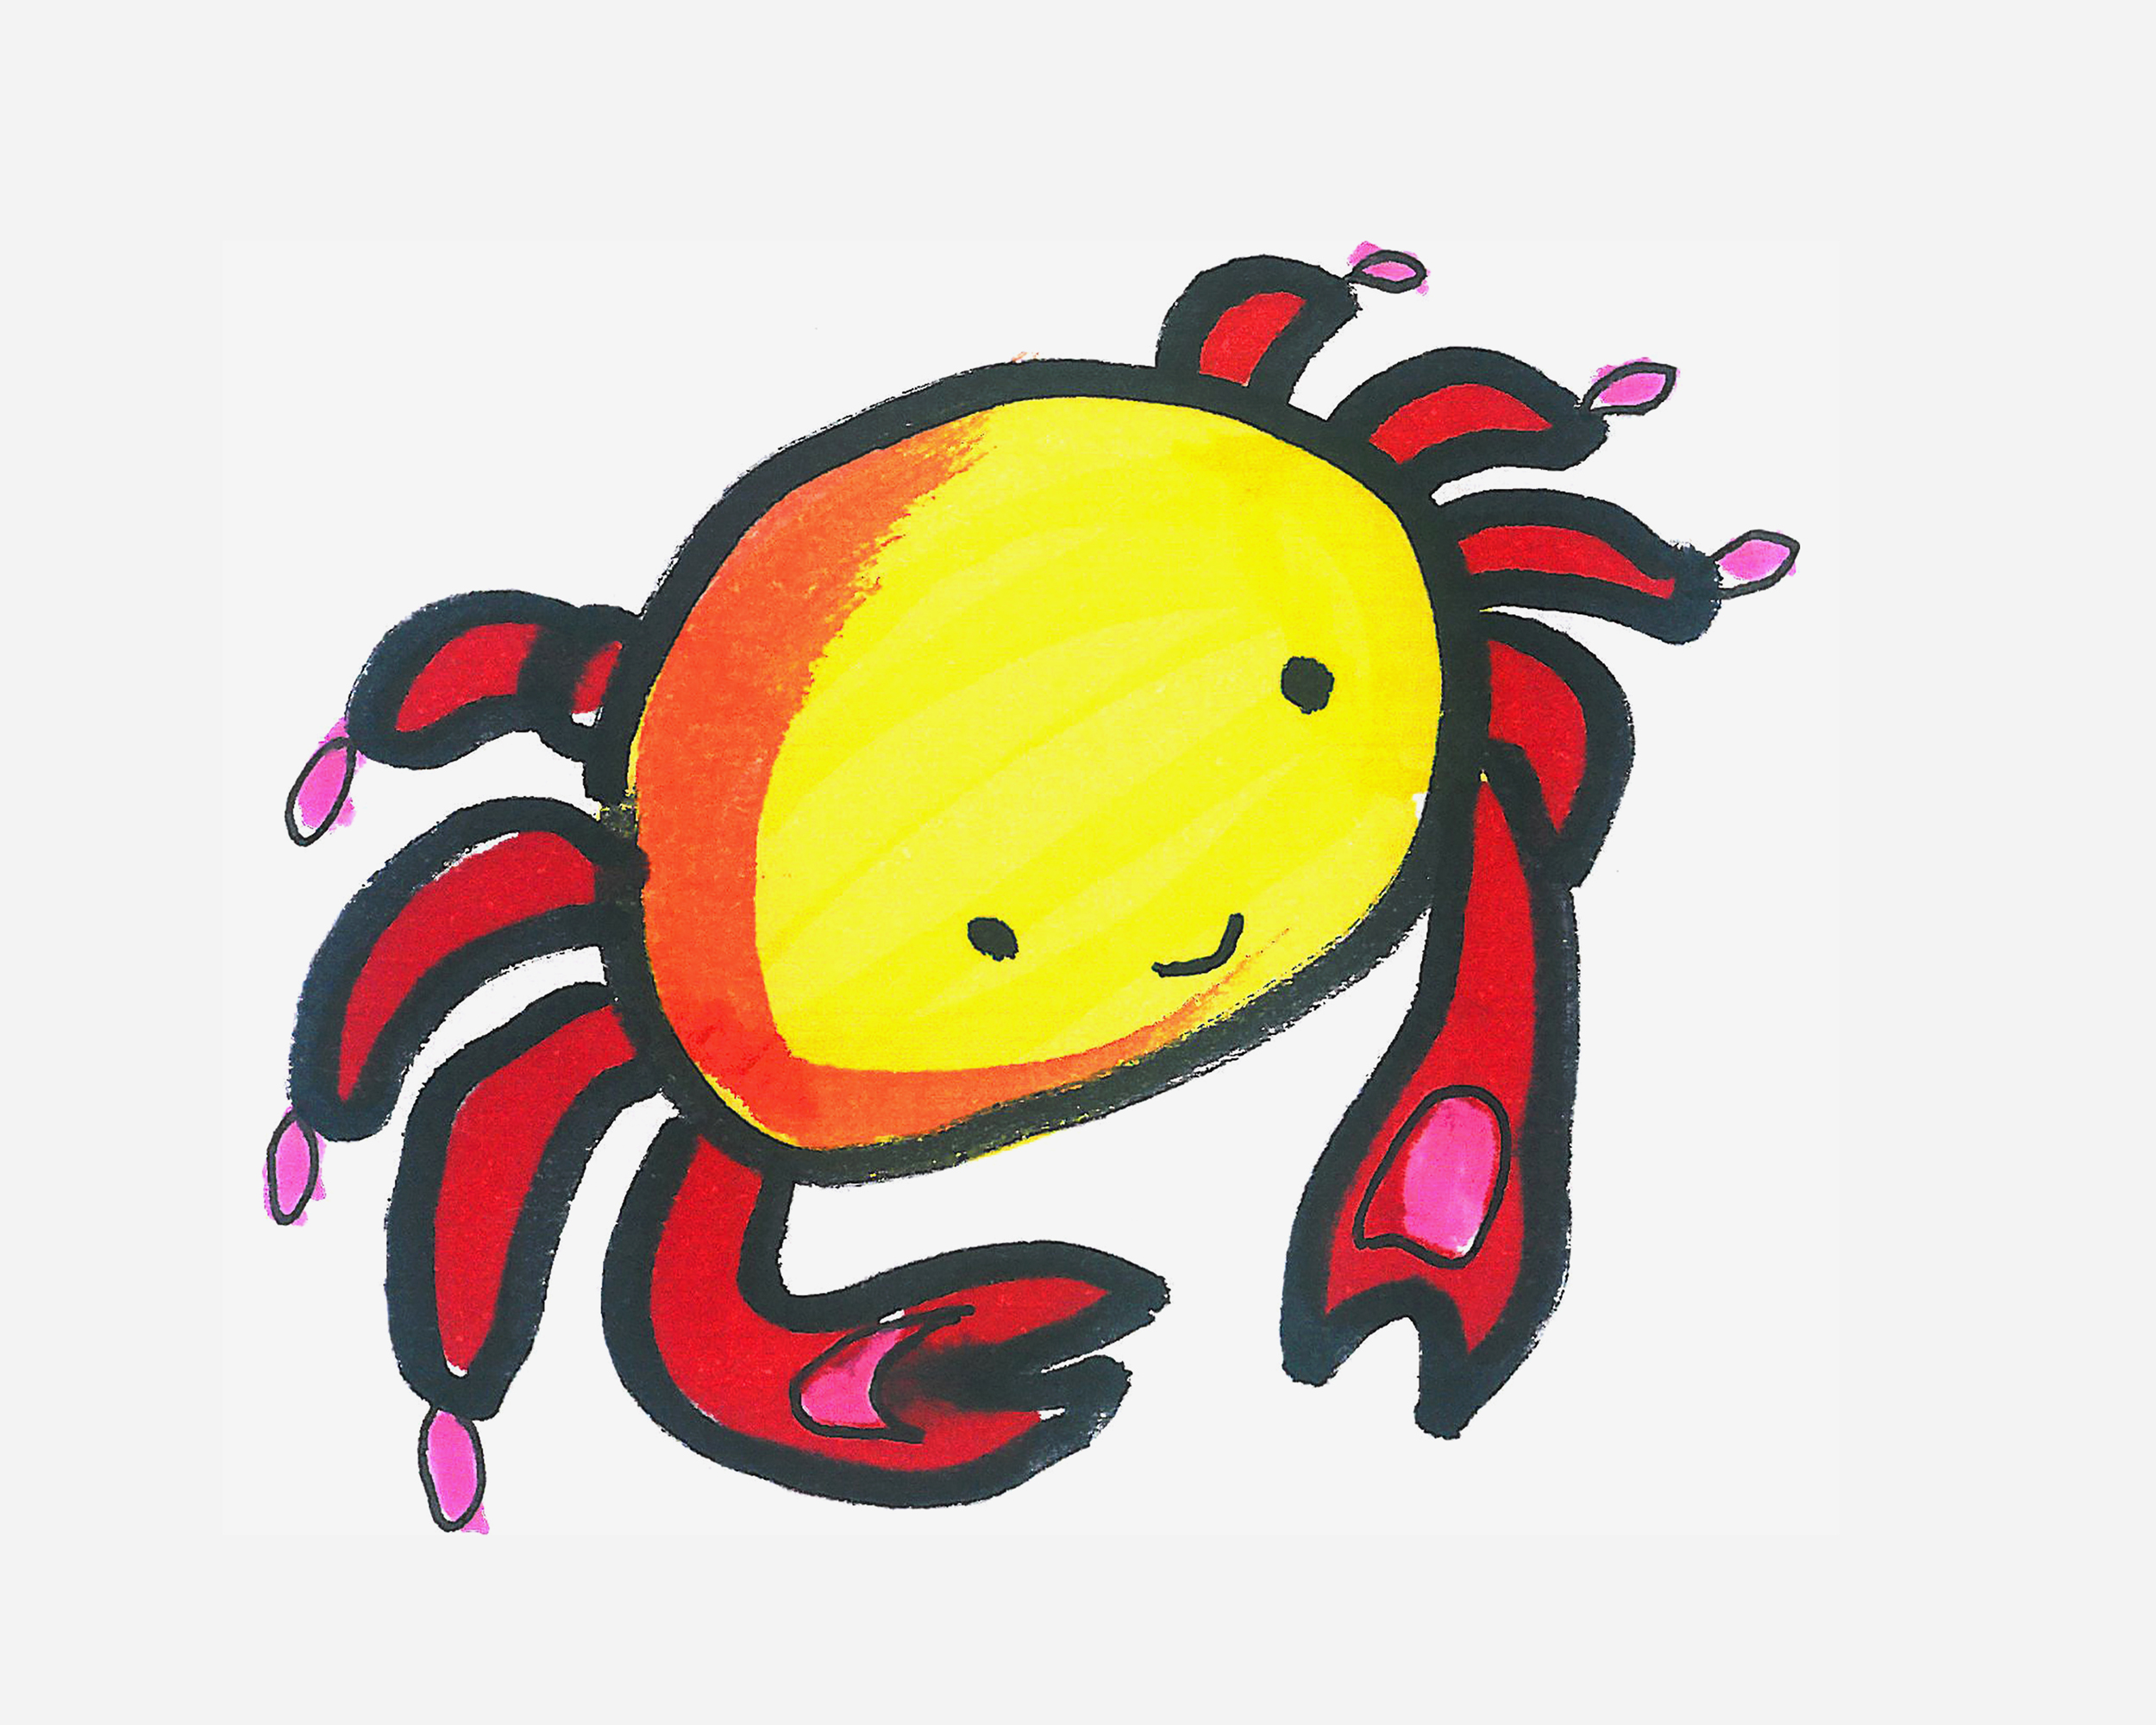 5-8岁儿童简笔画教程 小螃蟹的画法图解教程